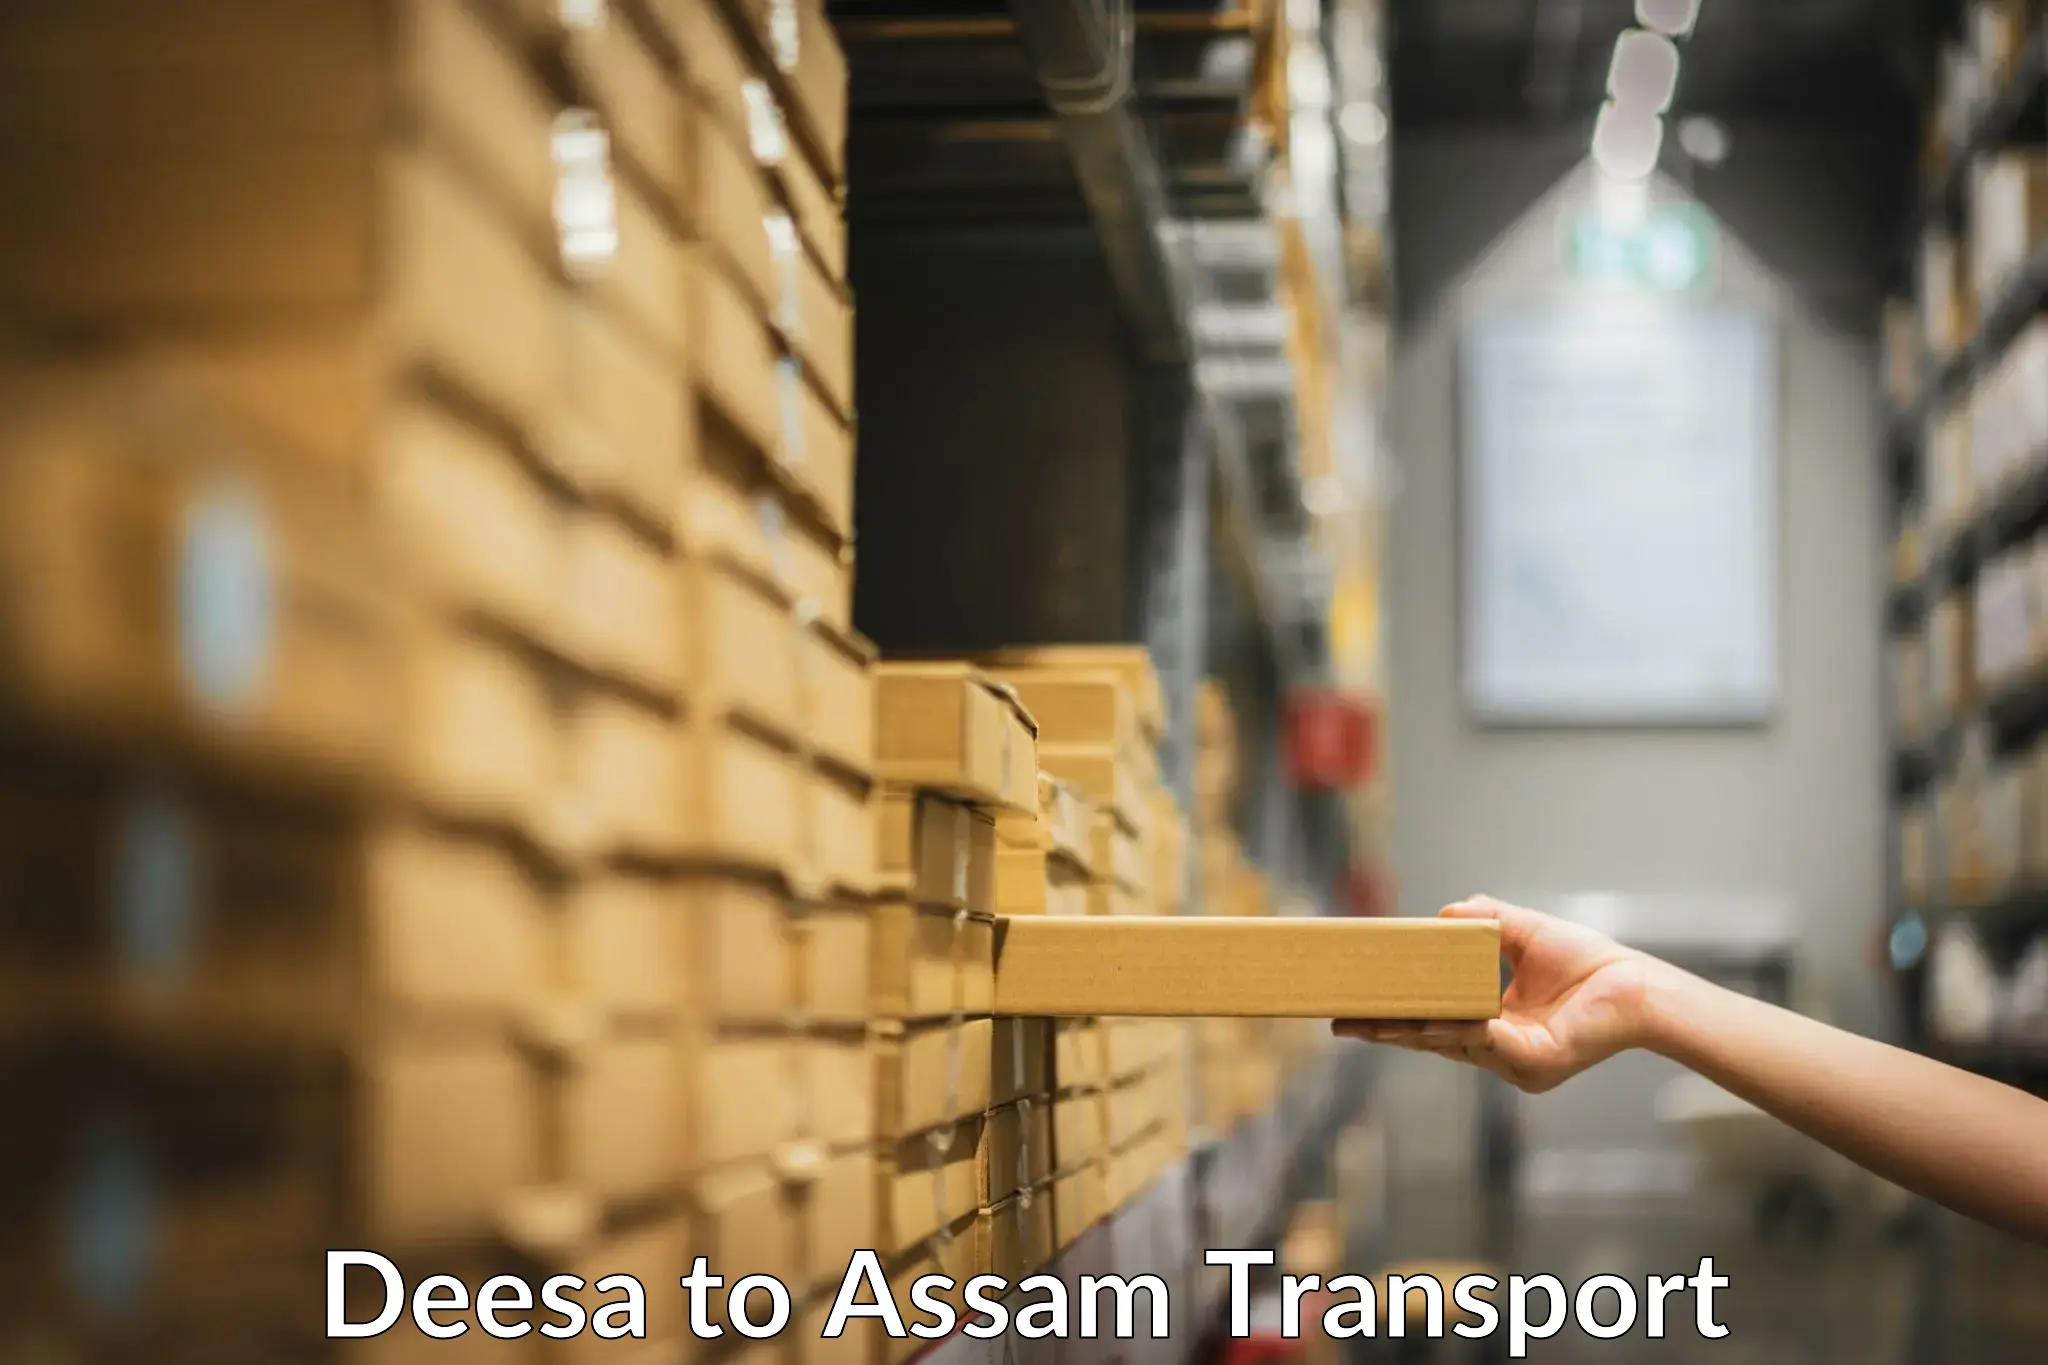 Nearest transport service Deesa to Gossaigaon